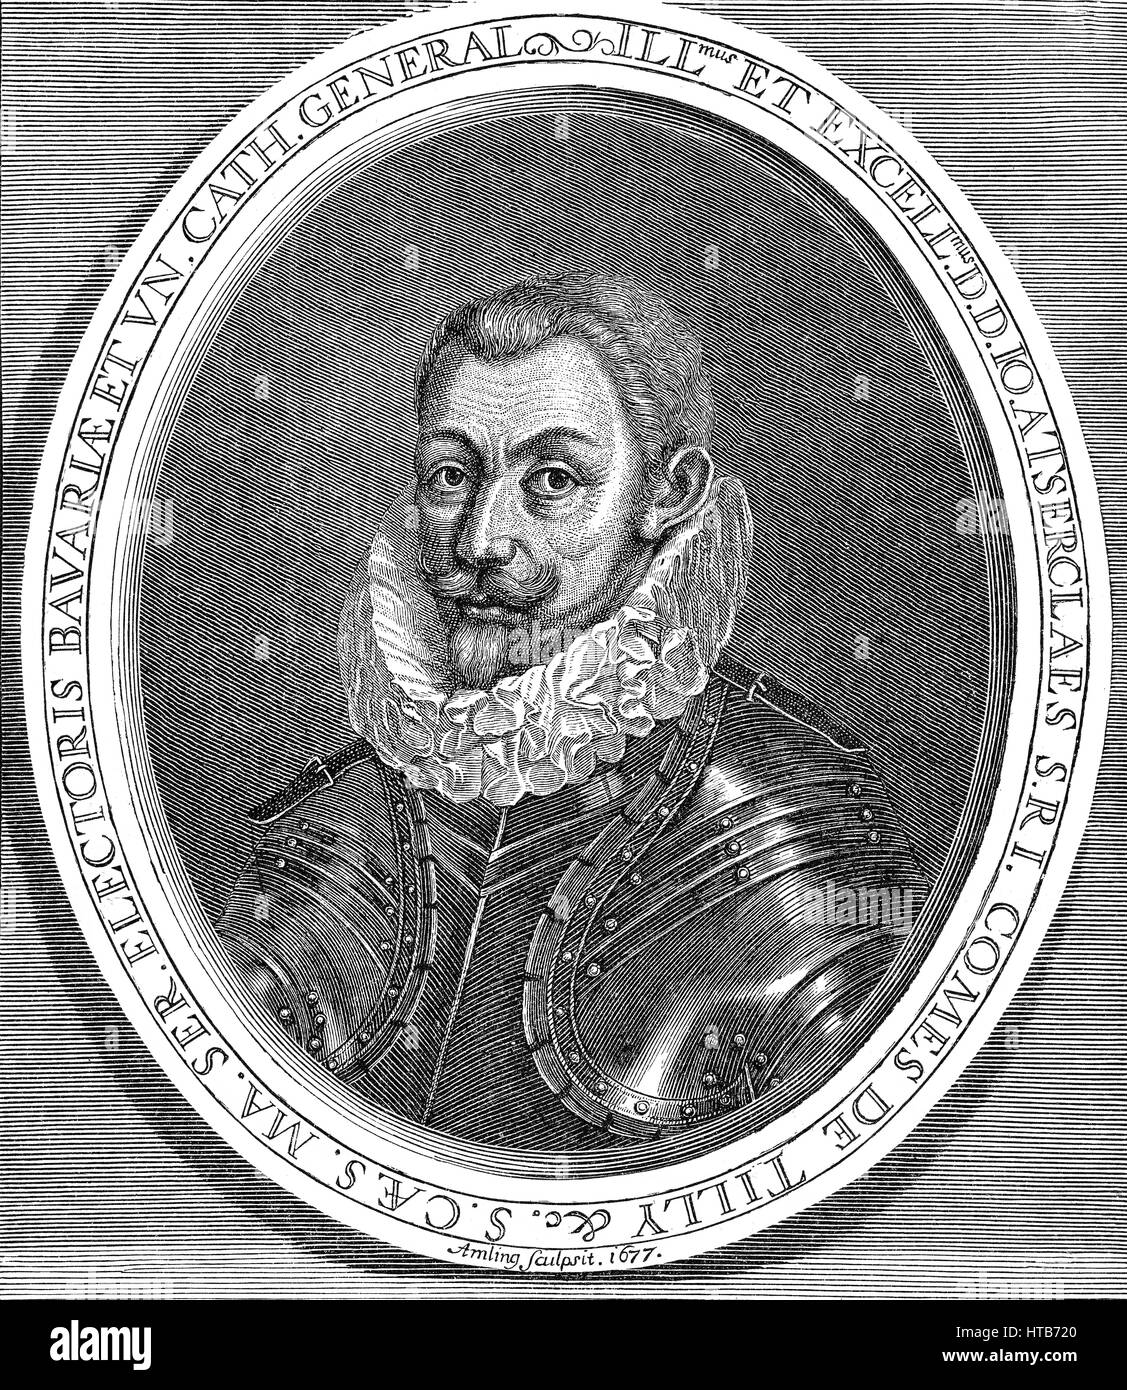 Johann t'Serclaes Graf von Tilly, 1559-1632, Befehlshaber der Armee und Kommandeur der katholischen Liga im Dreißigjährigen Krieg Stockfoto